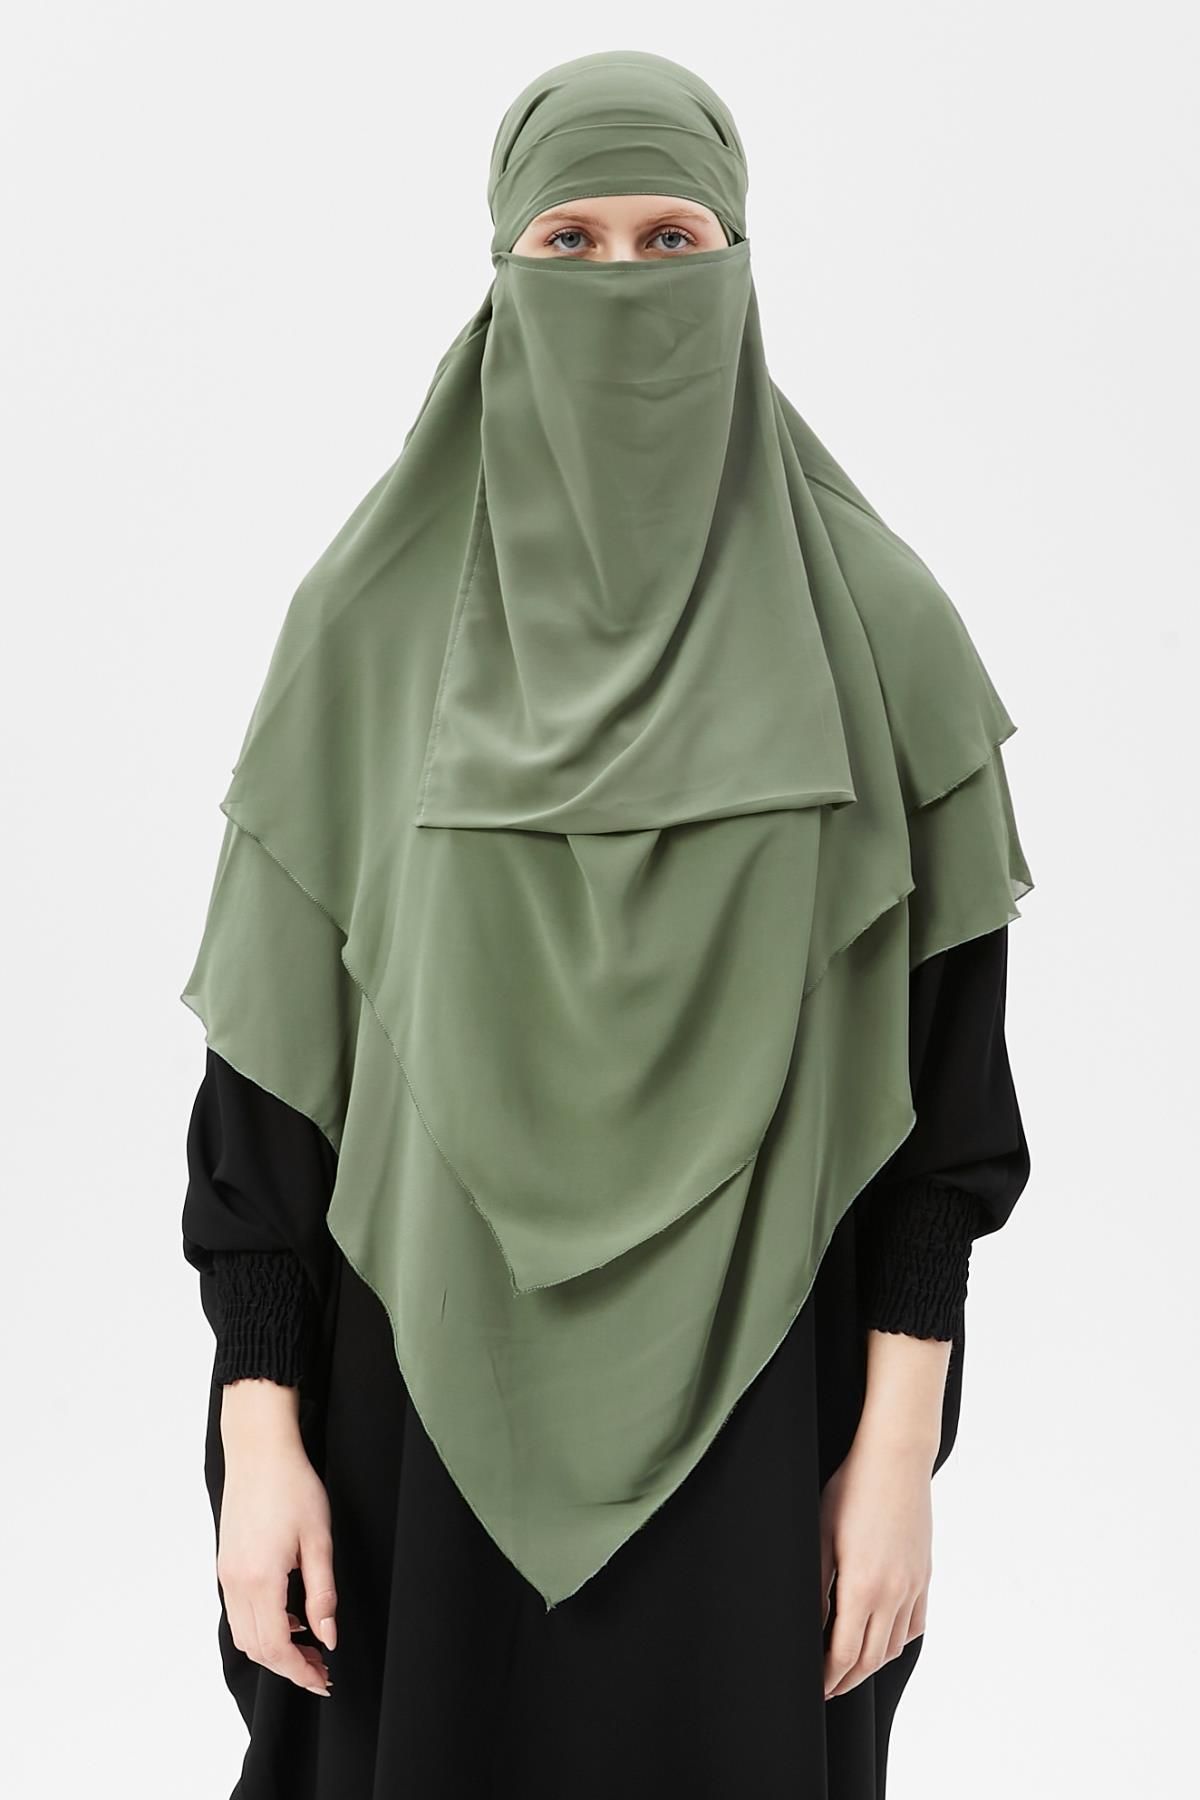 Altobeh Hazır Pratik Şifon Üç Katlı Peçeli Üçgen Hac Umre Şalı Sufle Hijab Nikap Fıstık Yeşili